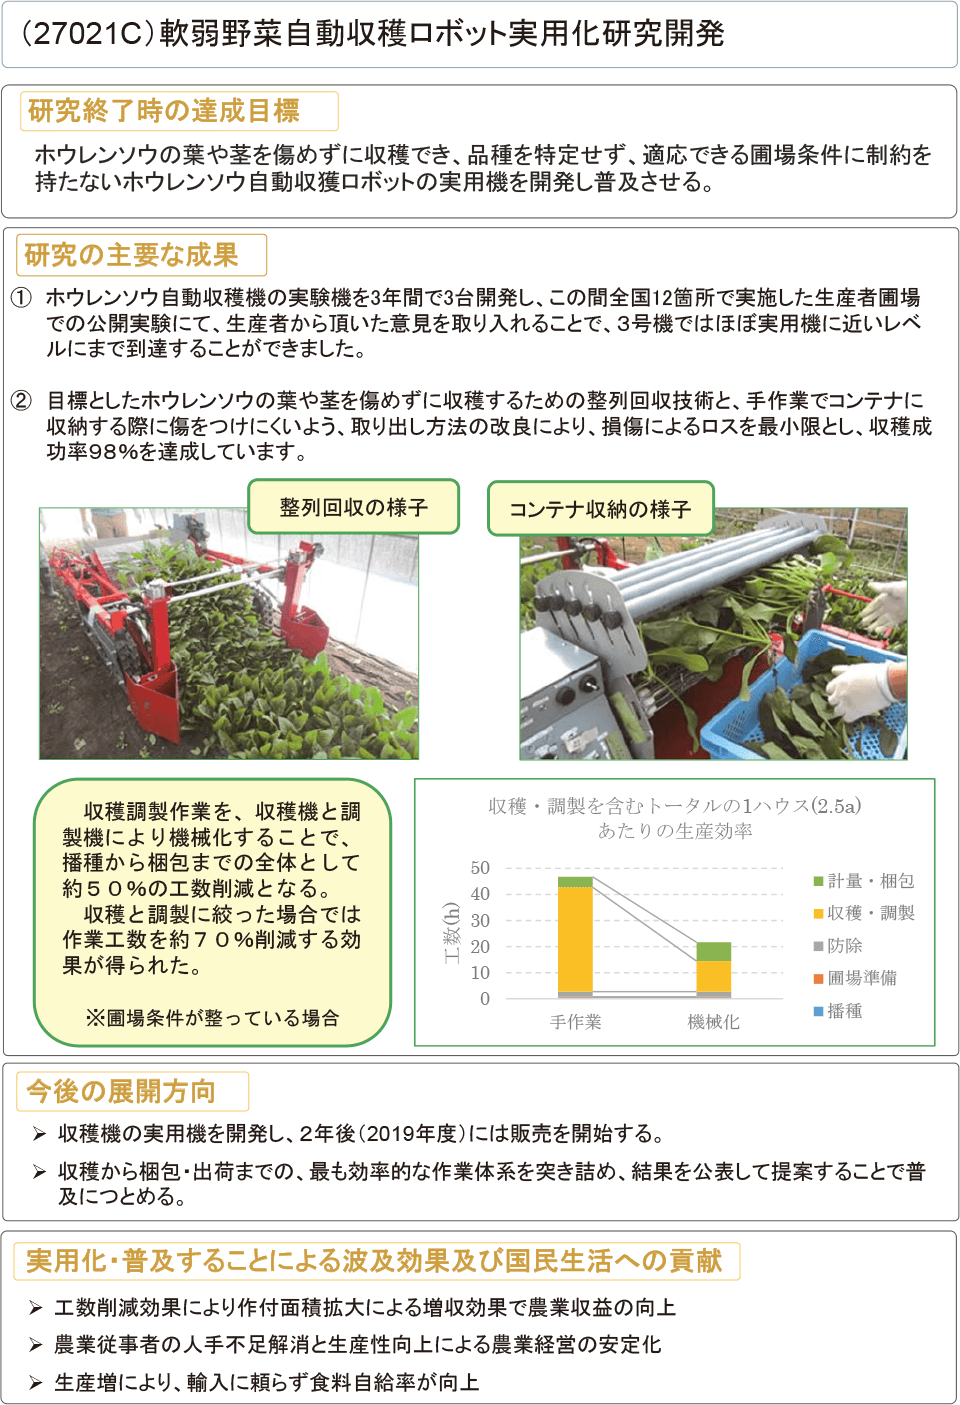 軟弱野菜自動収穫ロボット実用化研究開発：農林水産技術会議